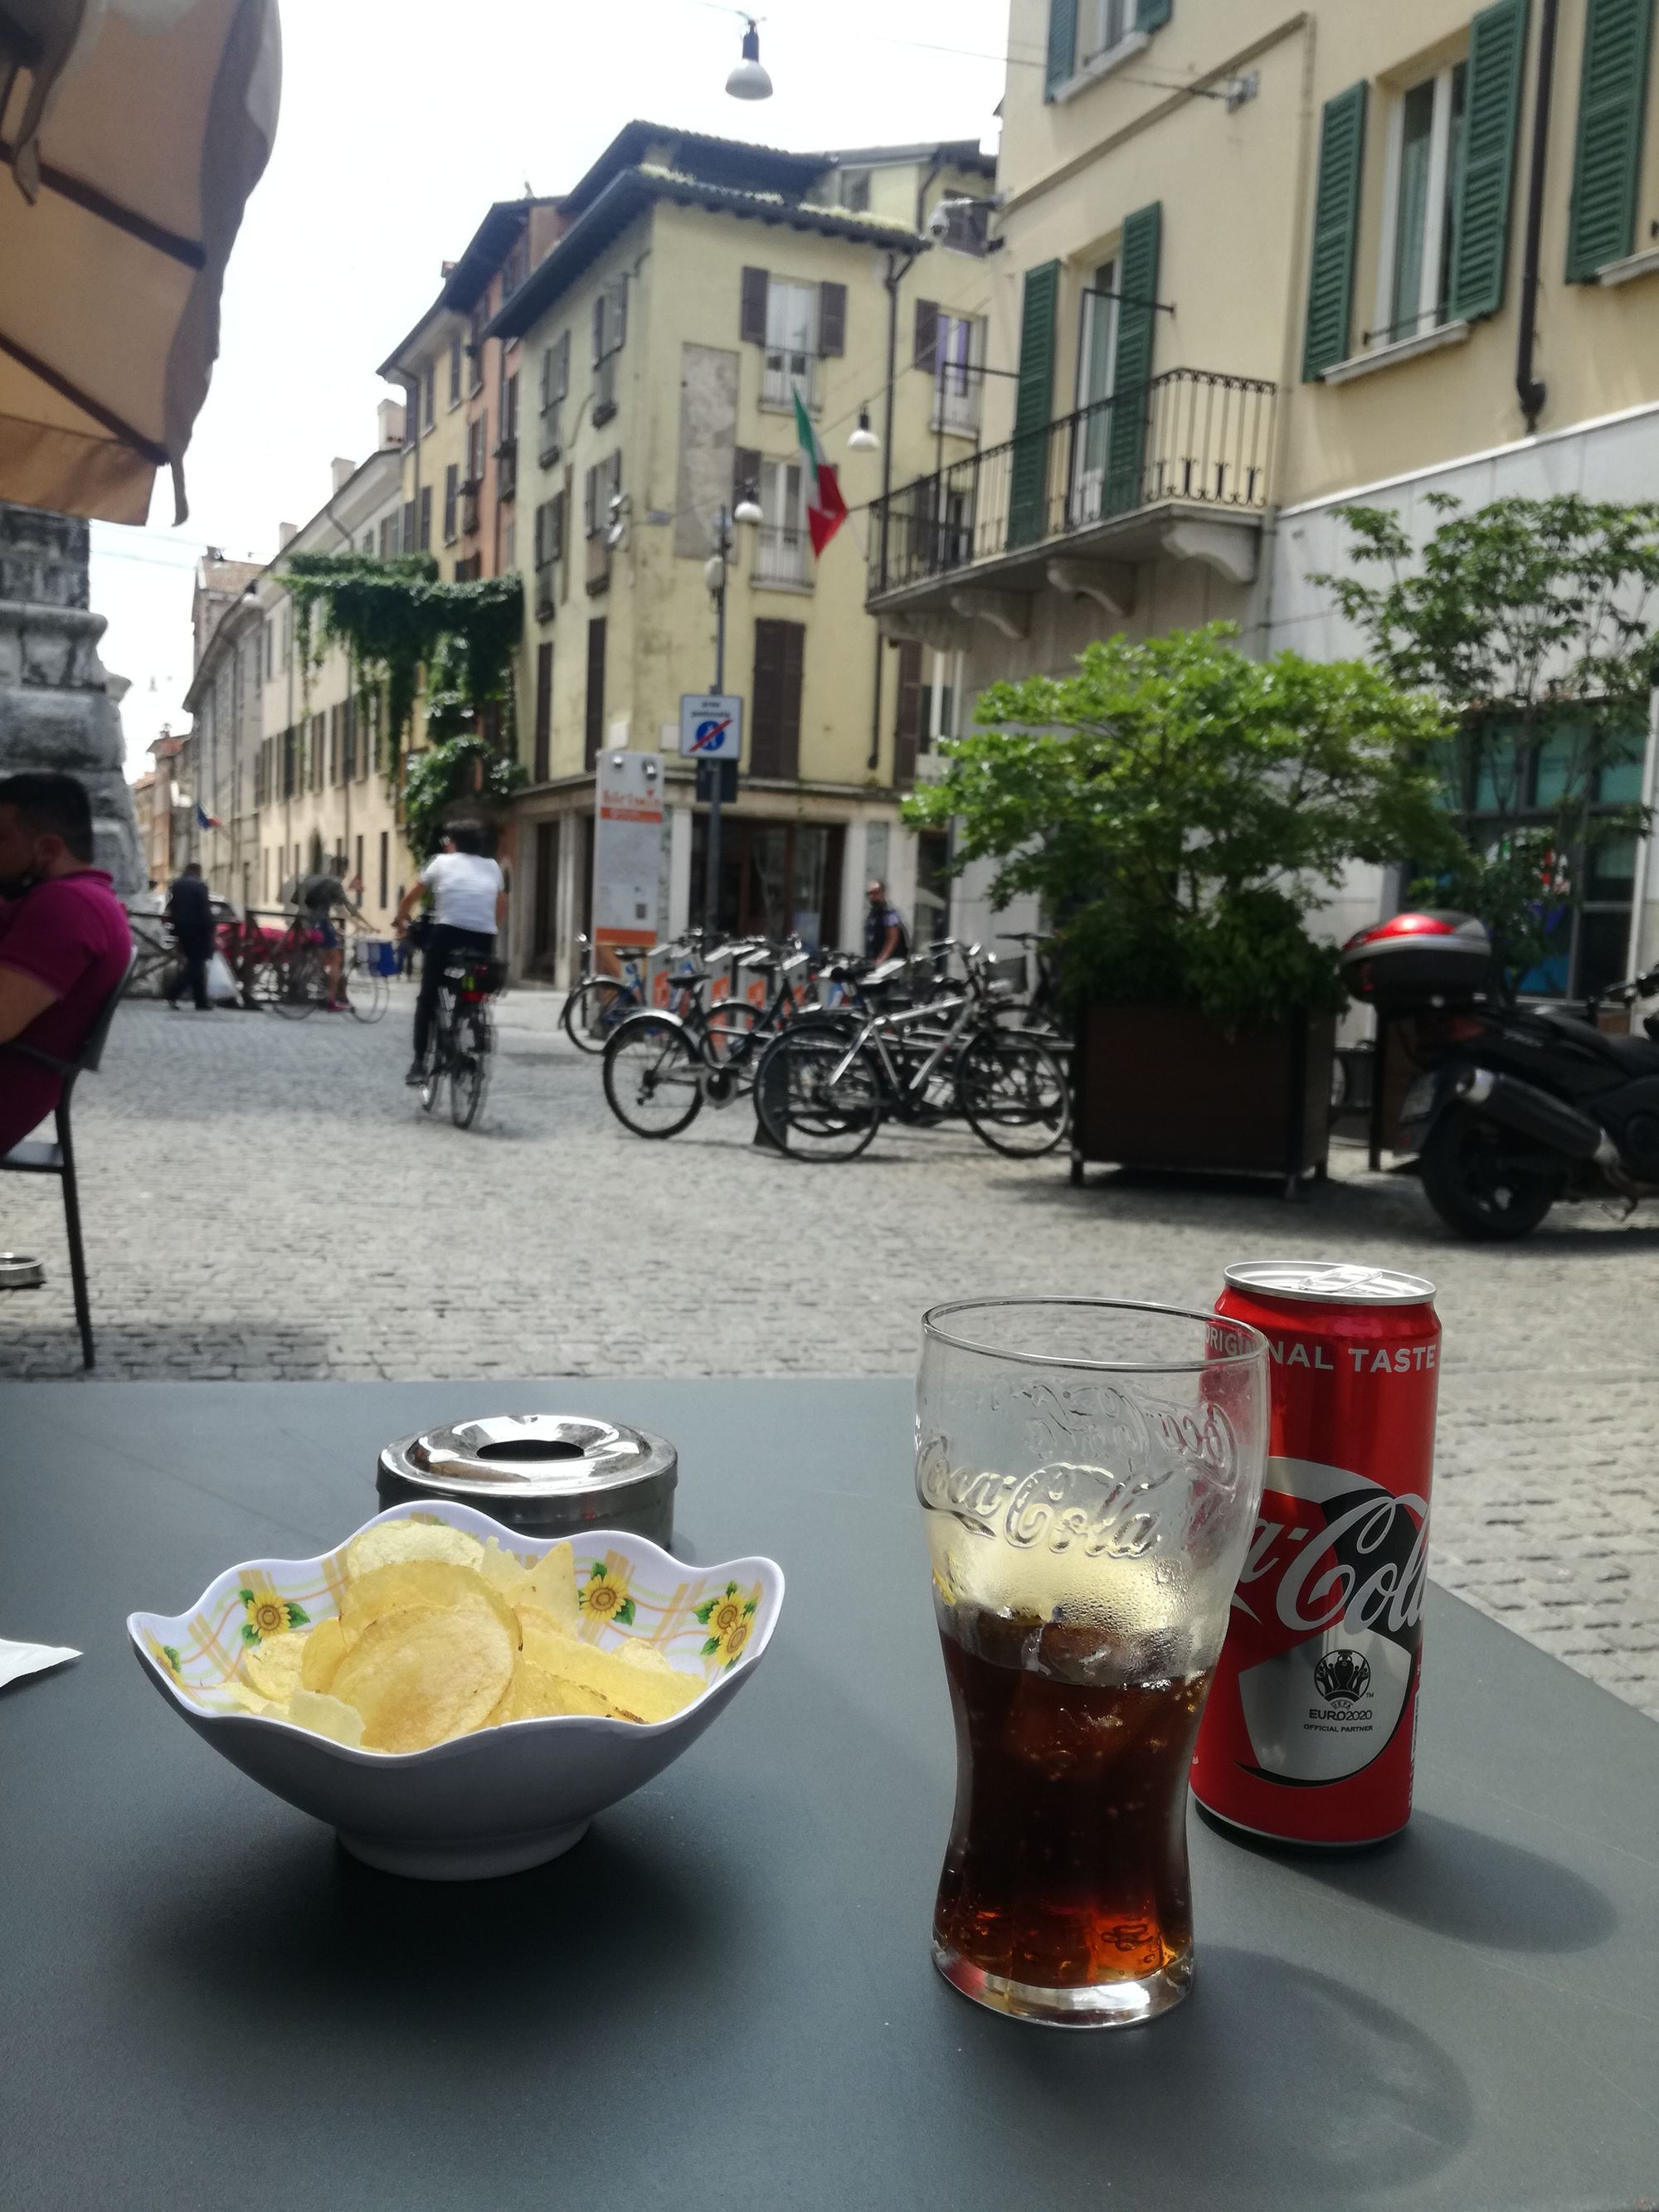 Nahaufnahme einer Schale mit Chips und eine Cola in einem Café in der Innenstadt. 